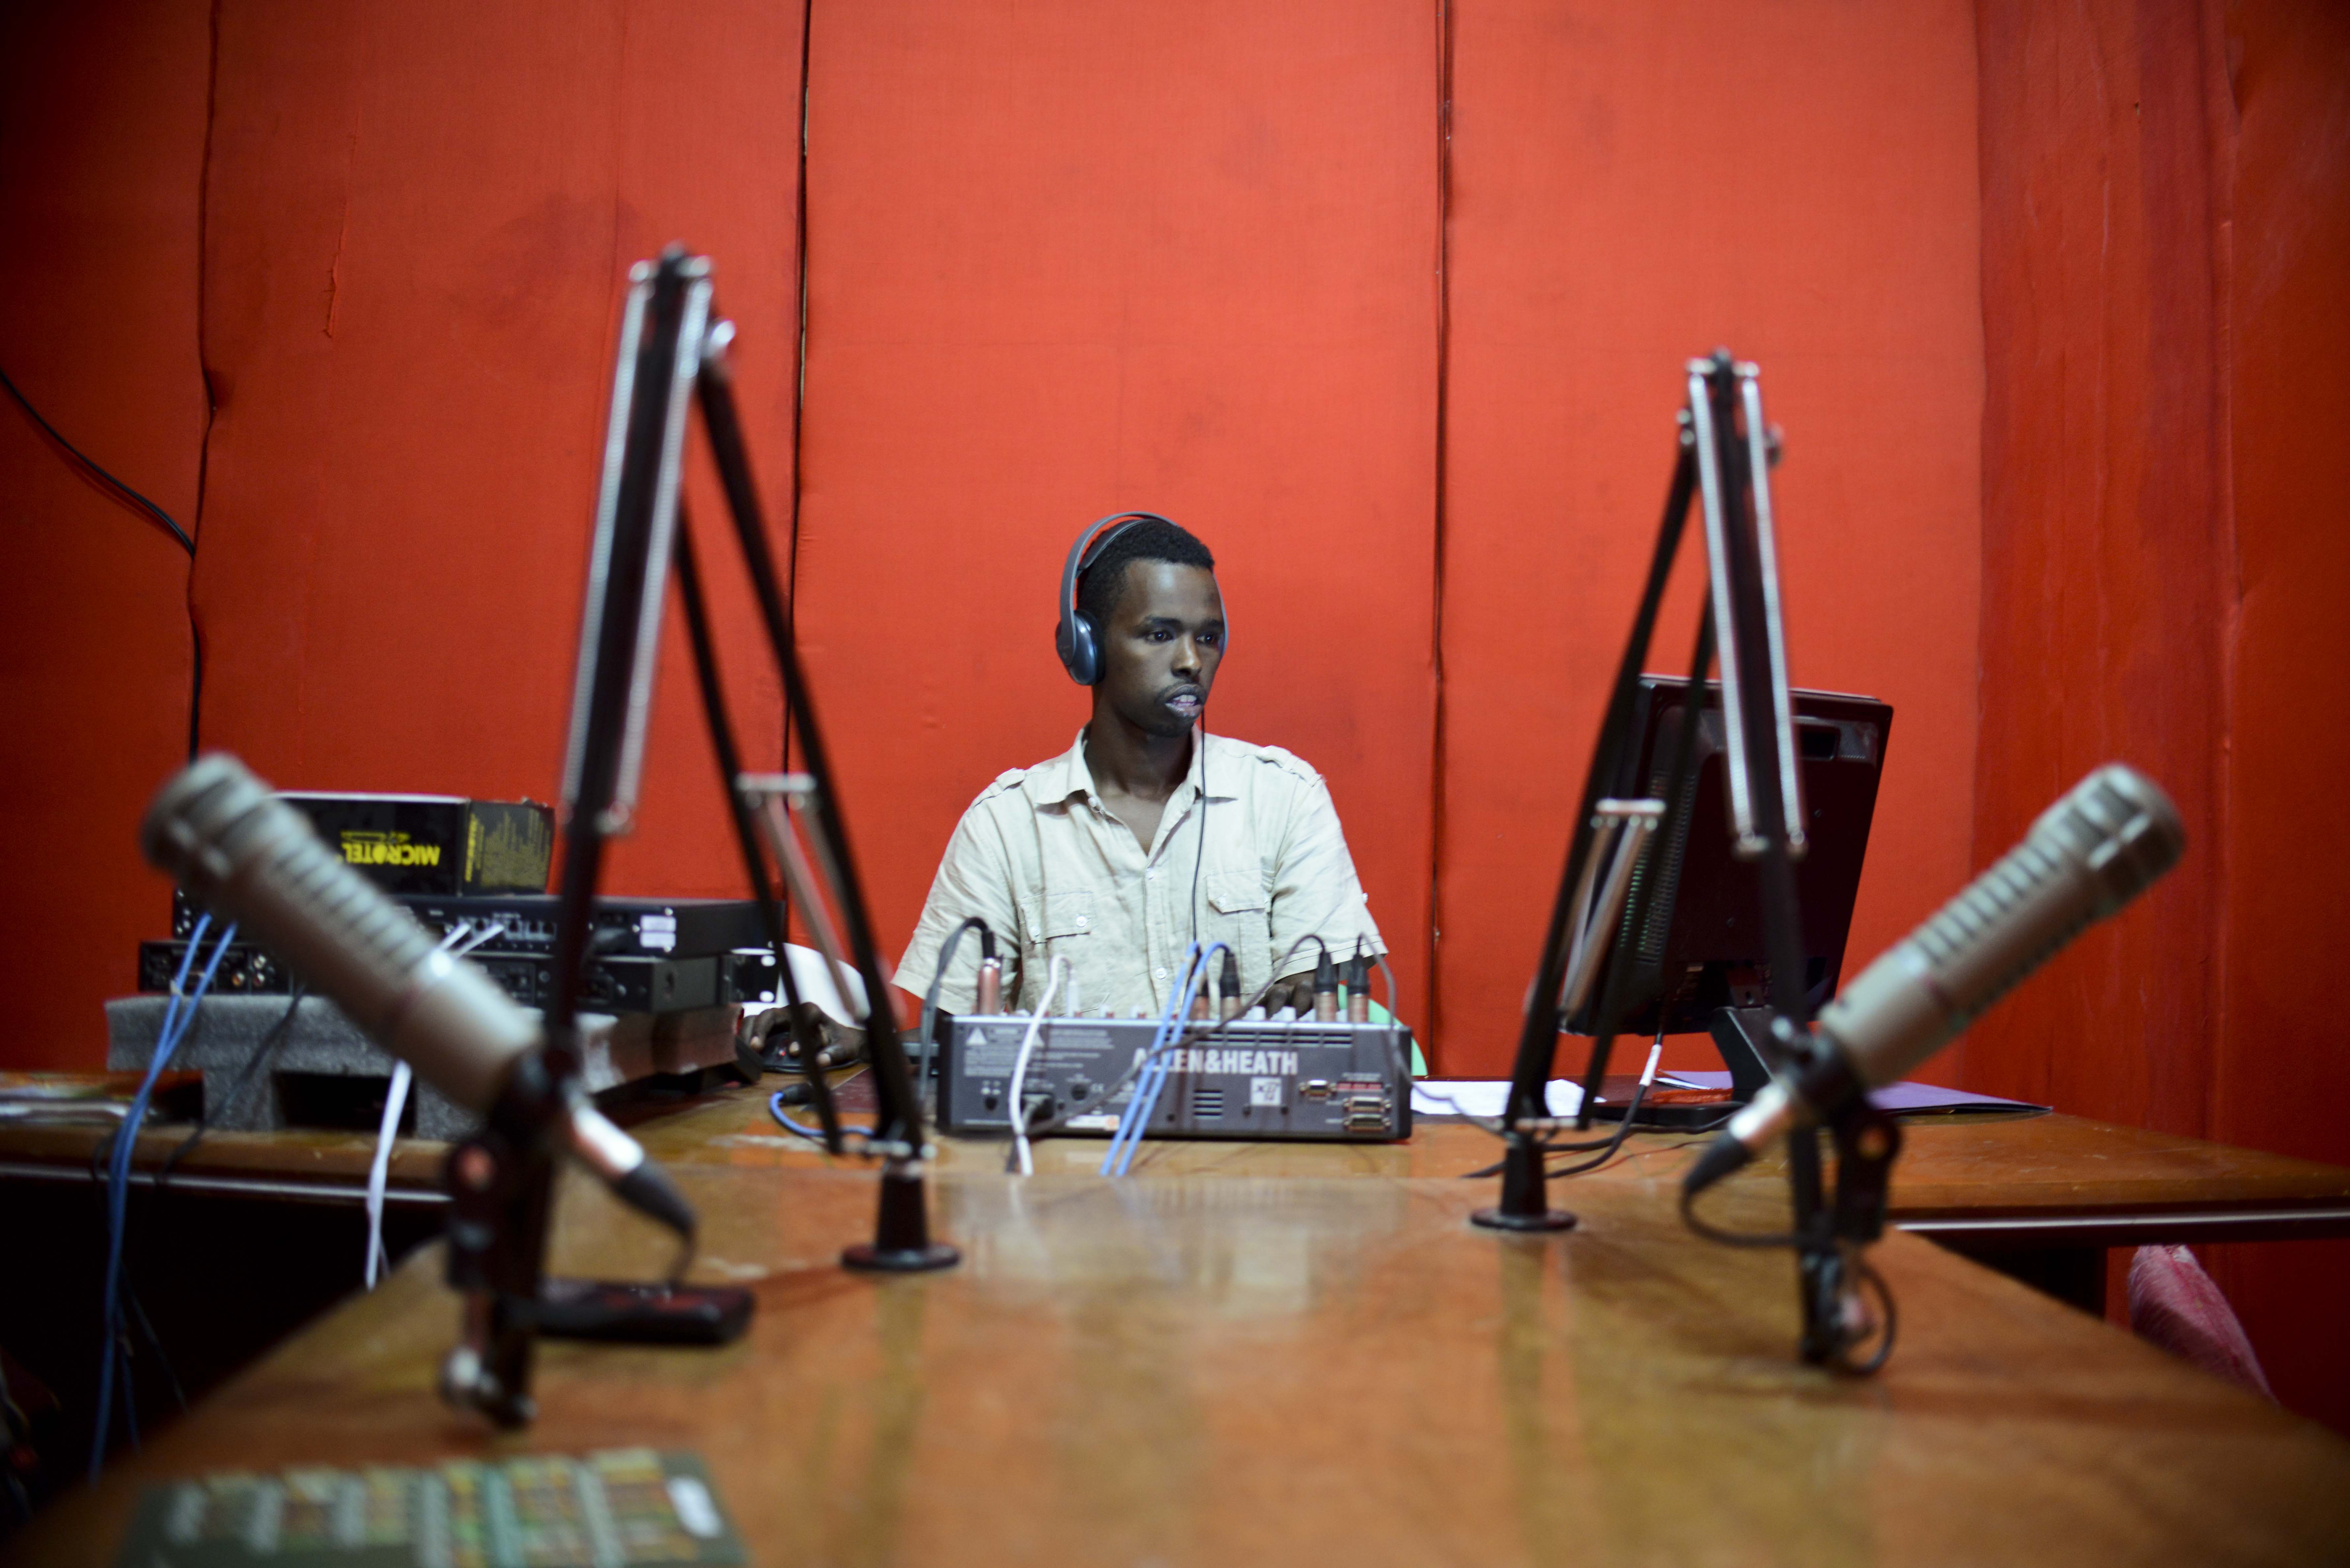 Un periodista retransmite desde Radio Shabelle, una de las populares emisoras de Mogadiscio (Somalia), que corren peligro por pronunciarse contra la organización terrorista Al Shabab, Amisom Public Information/Flickr